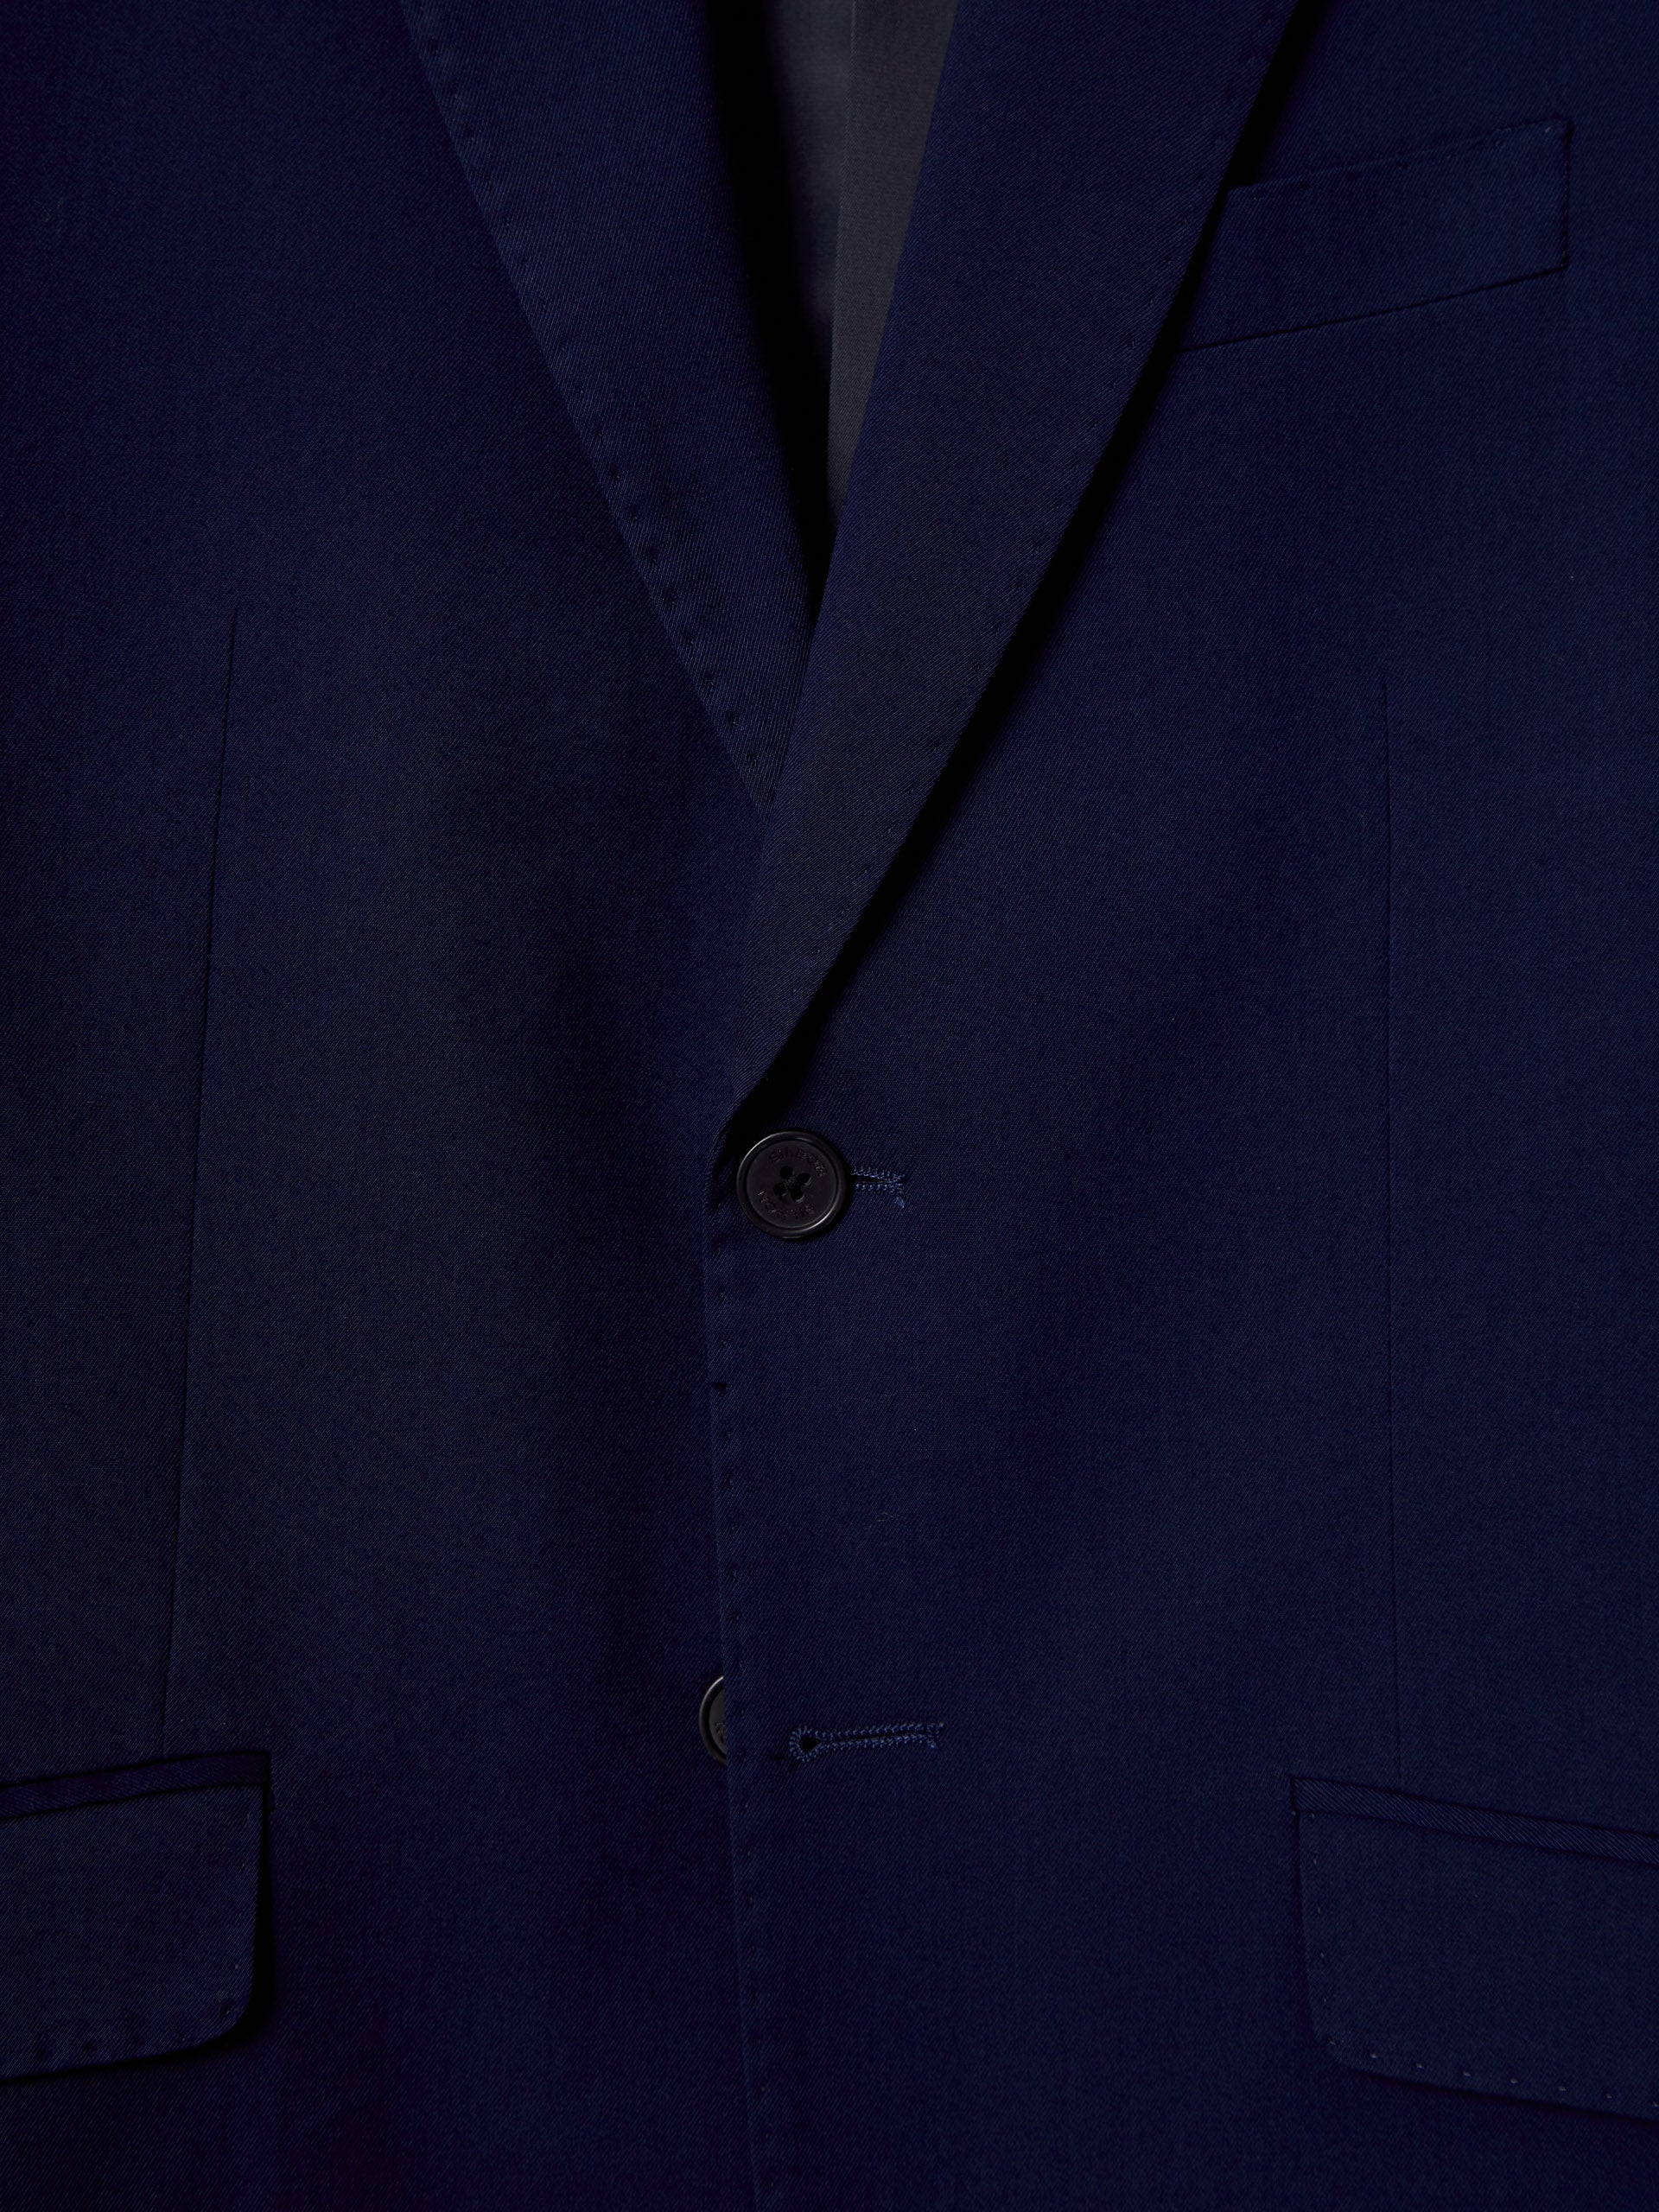 Medium blue essential suit jacket